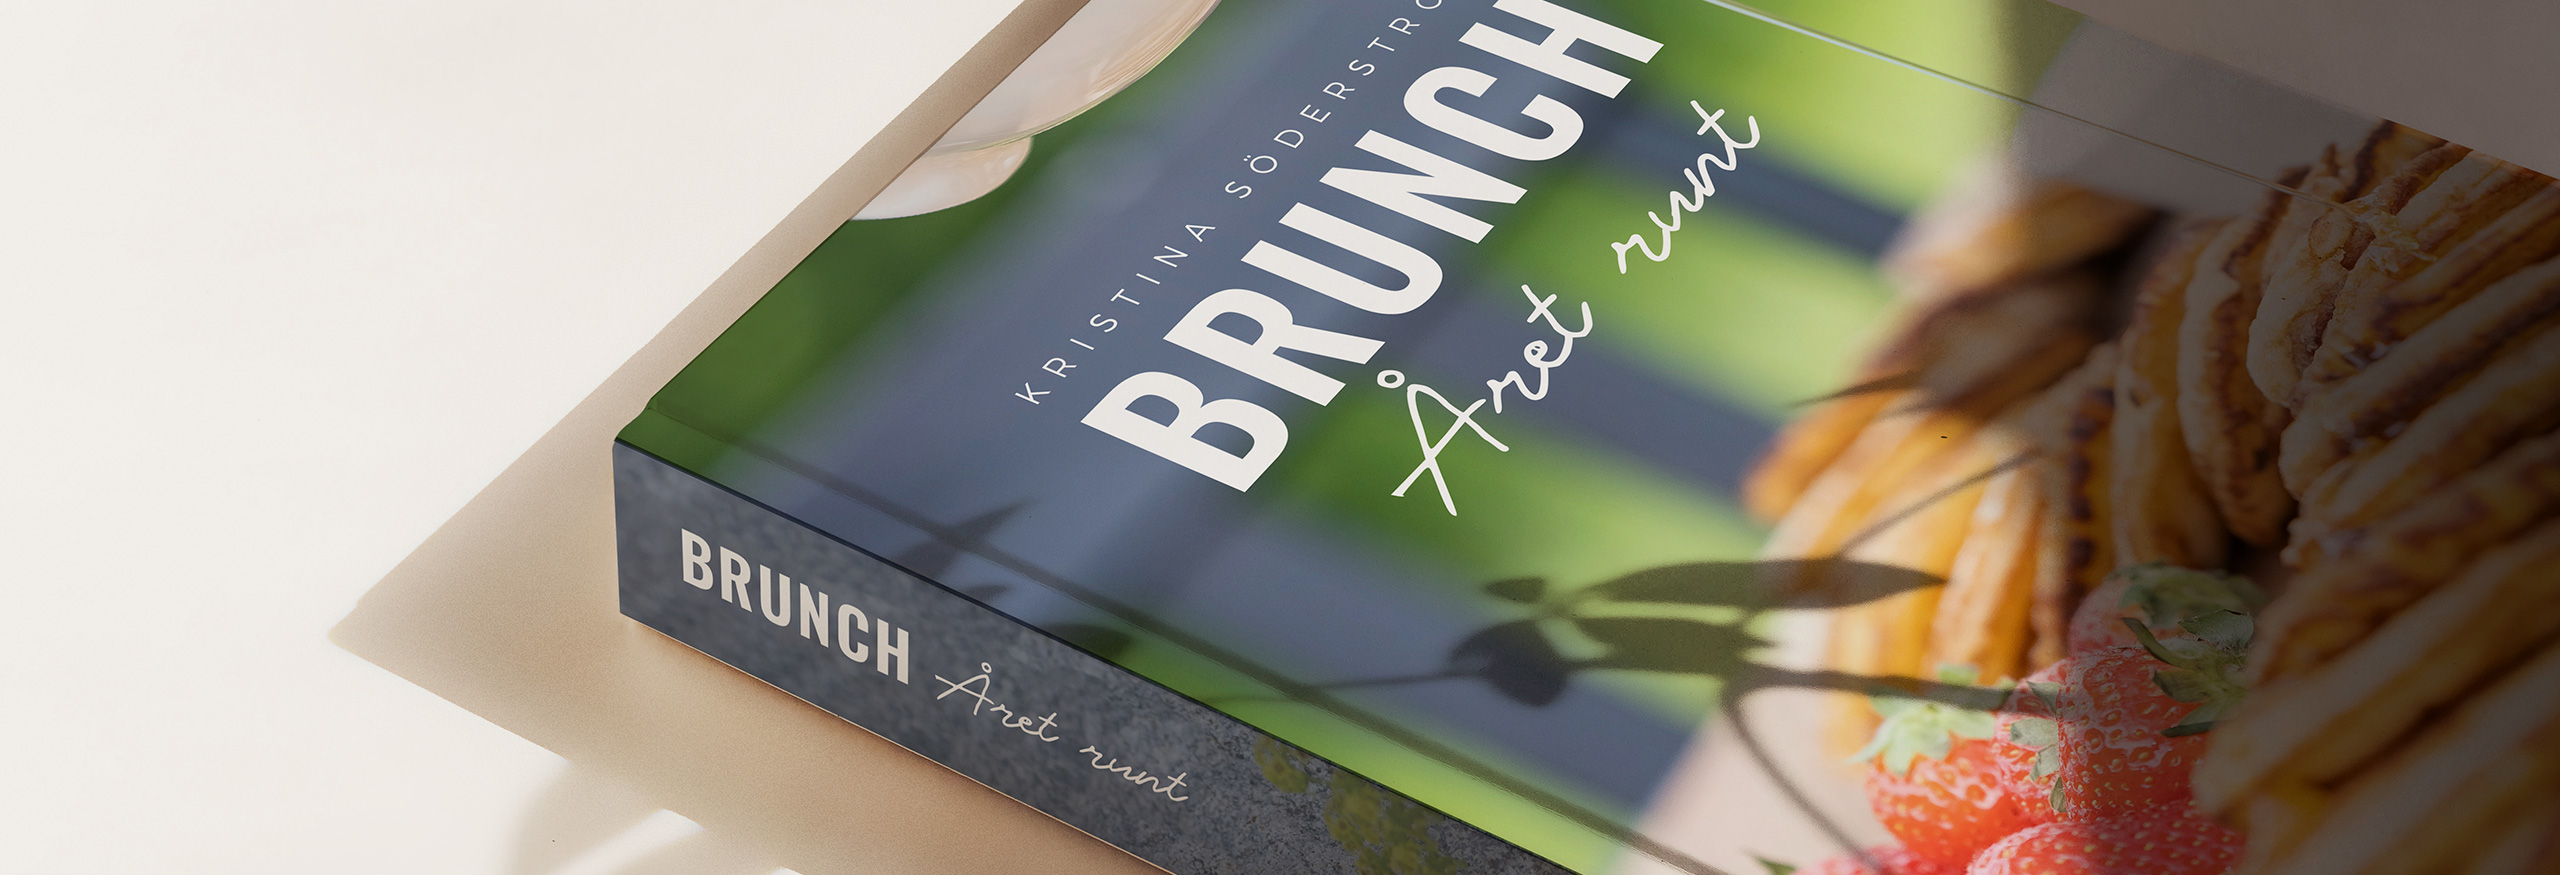 Bokformgivning av boken Brunch - Året runt